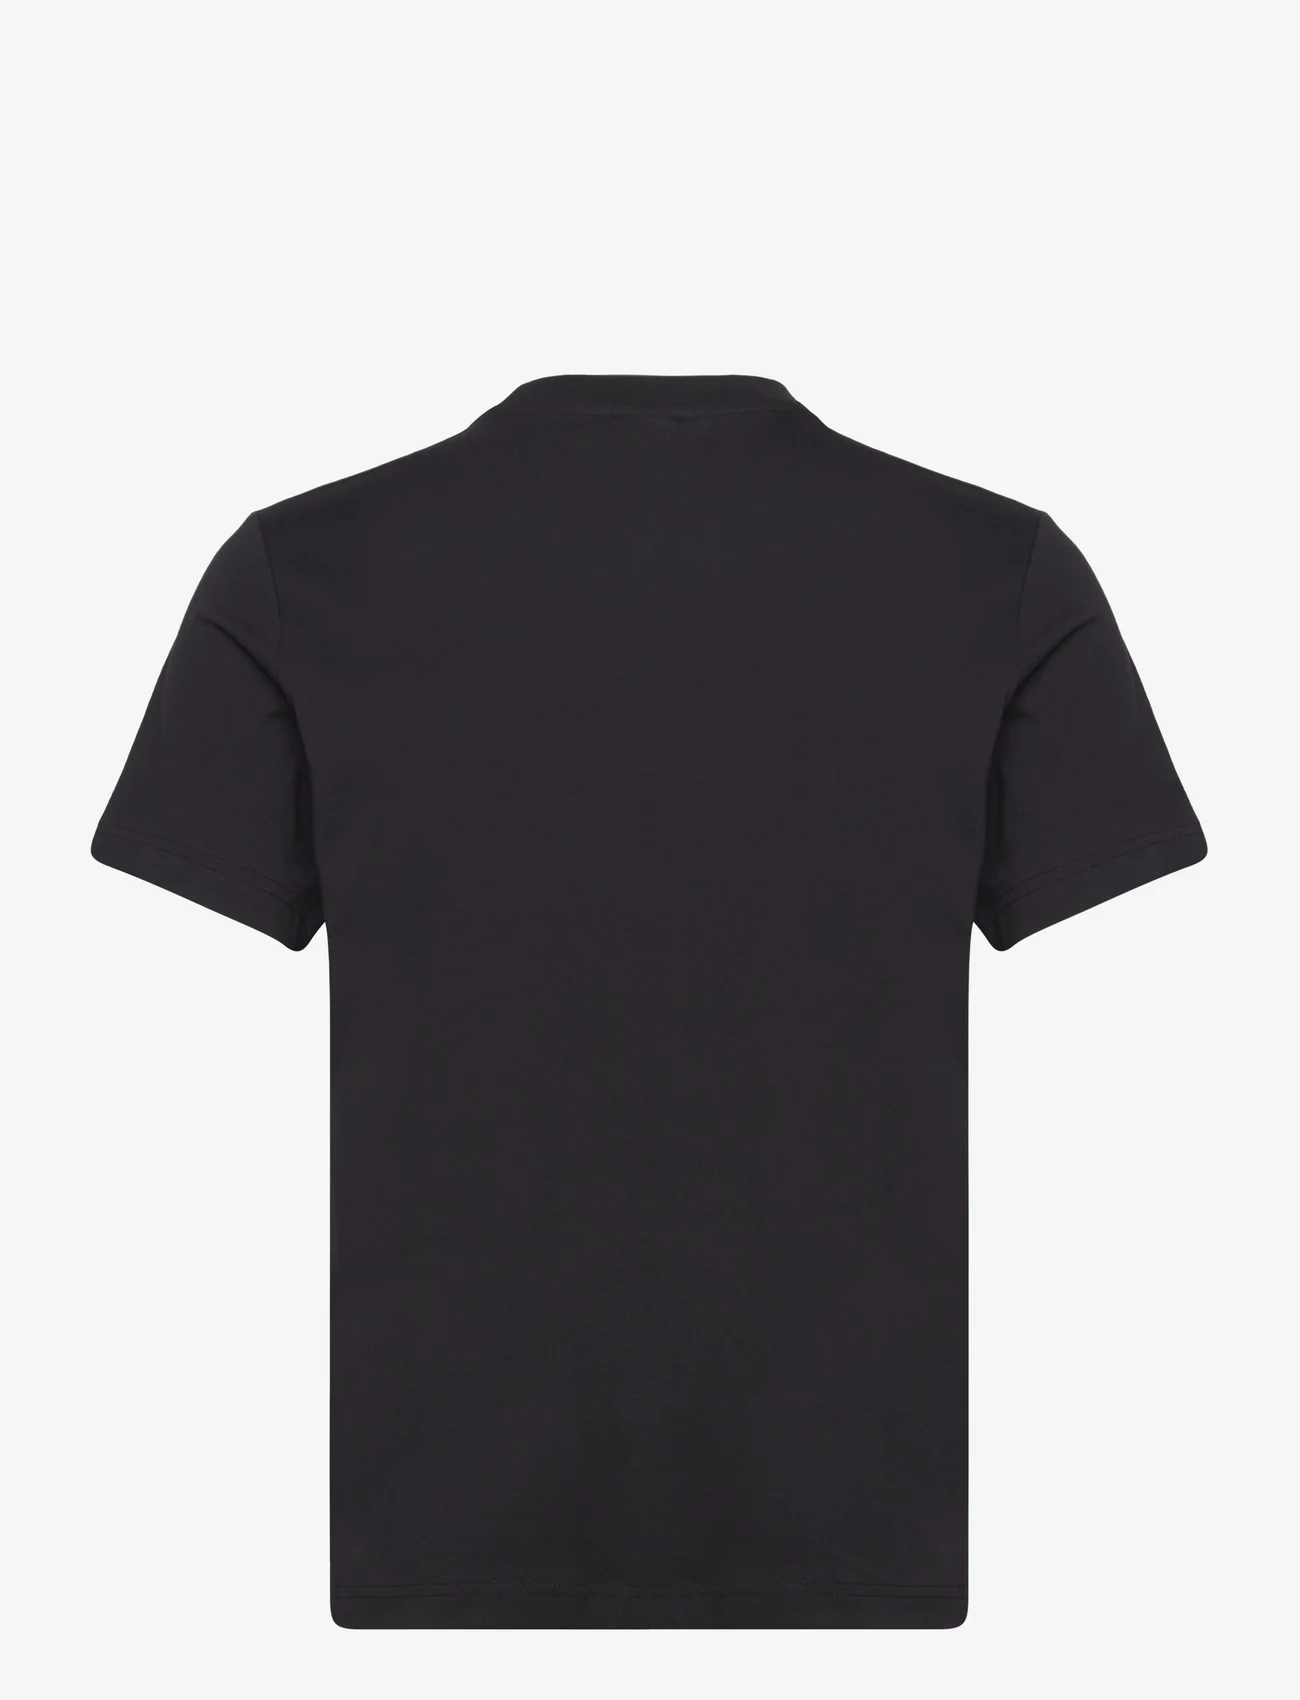 Champion - Crewneck T-Shirt - die niedrigsten preise - black beauty - 1